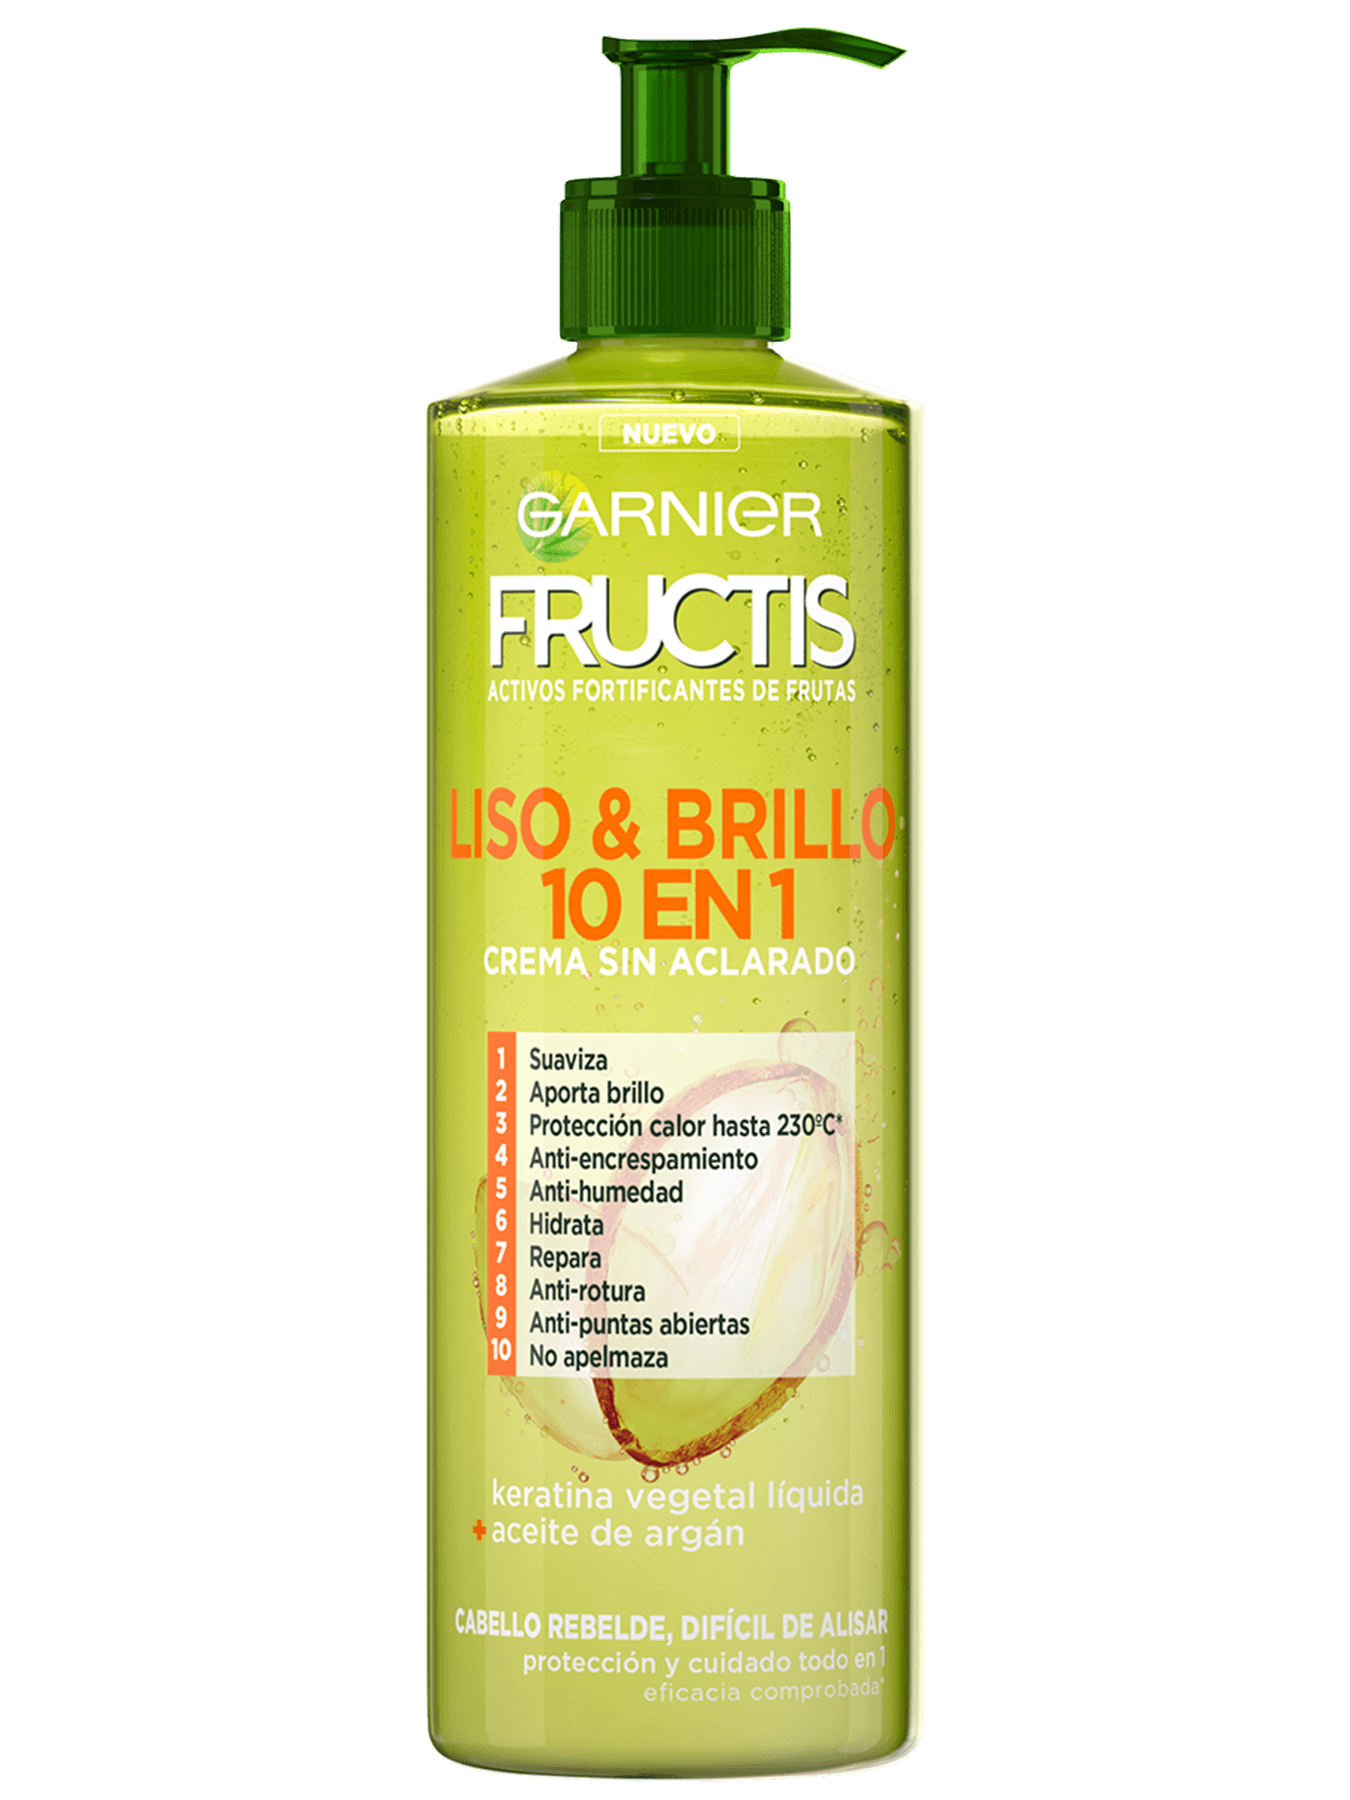 Fructis & Brillo Aclarado 10 en 1 | Garnier